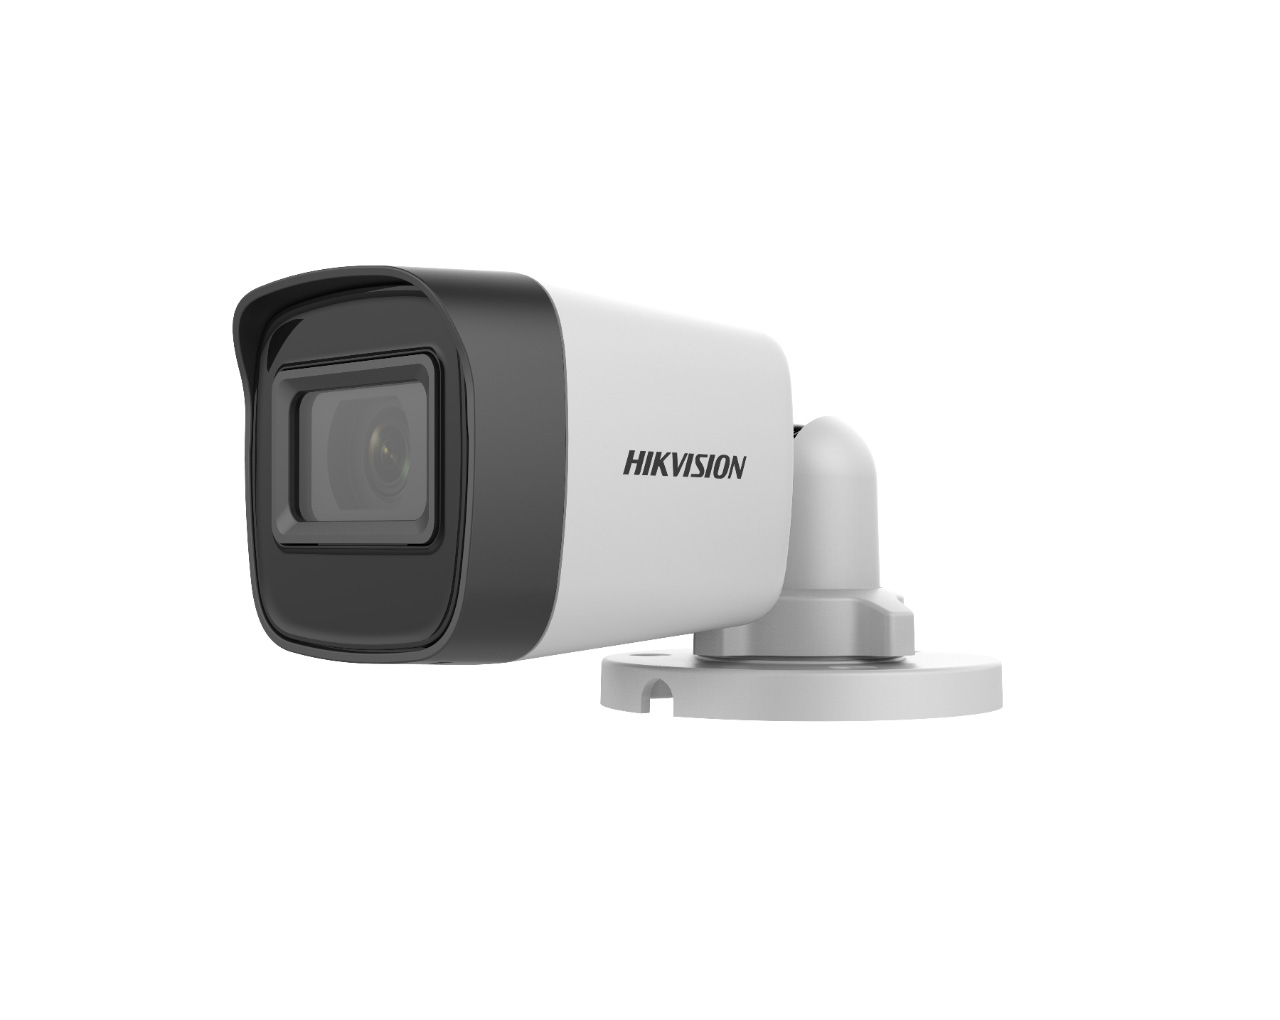 Hikvision DS-2CE16H0T-ITFS(2.8mm)